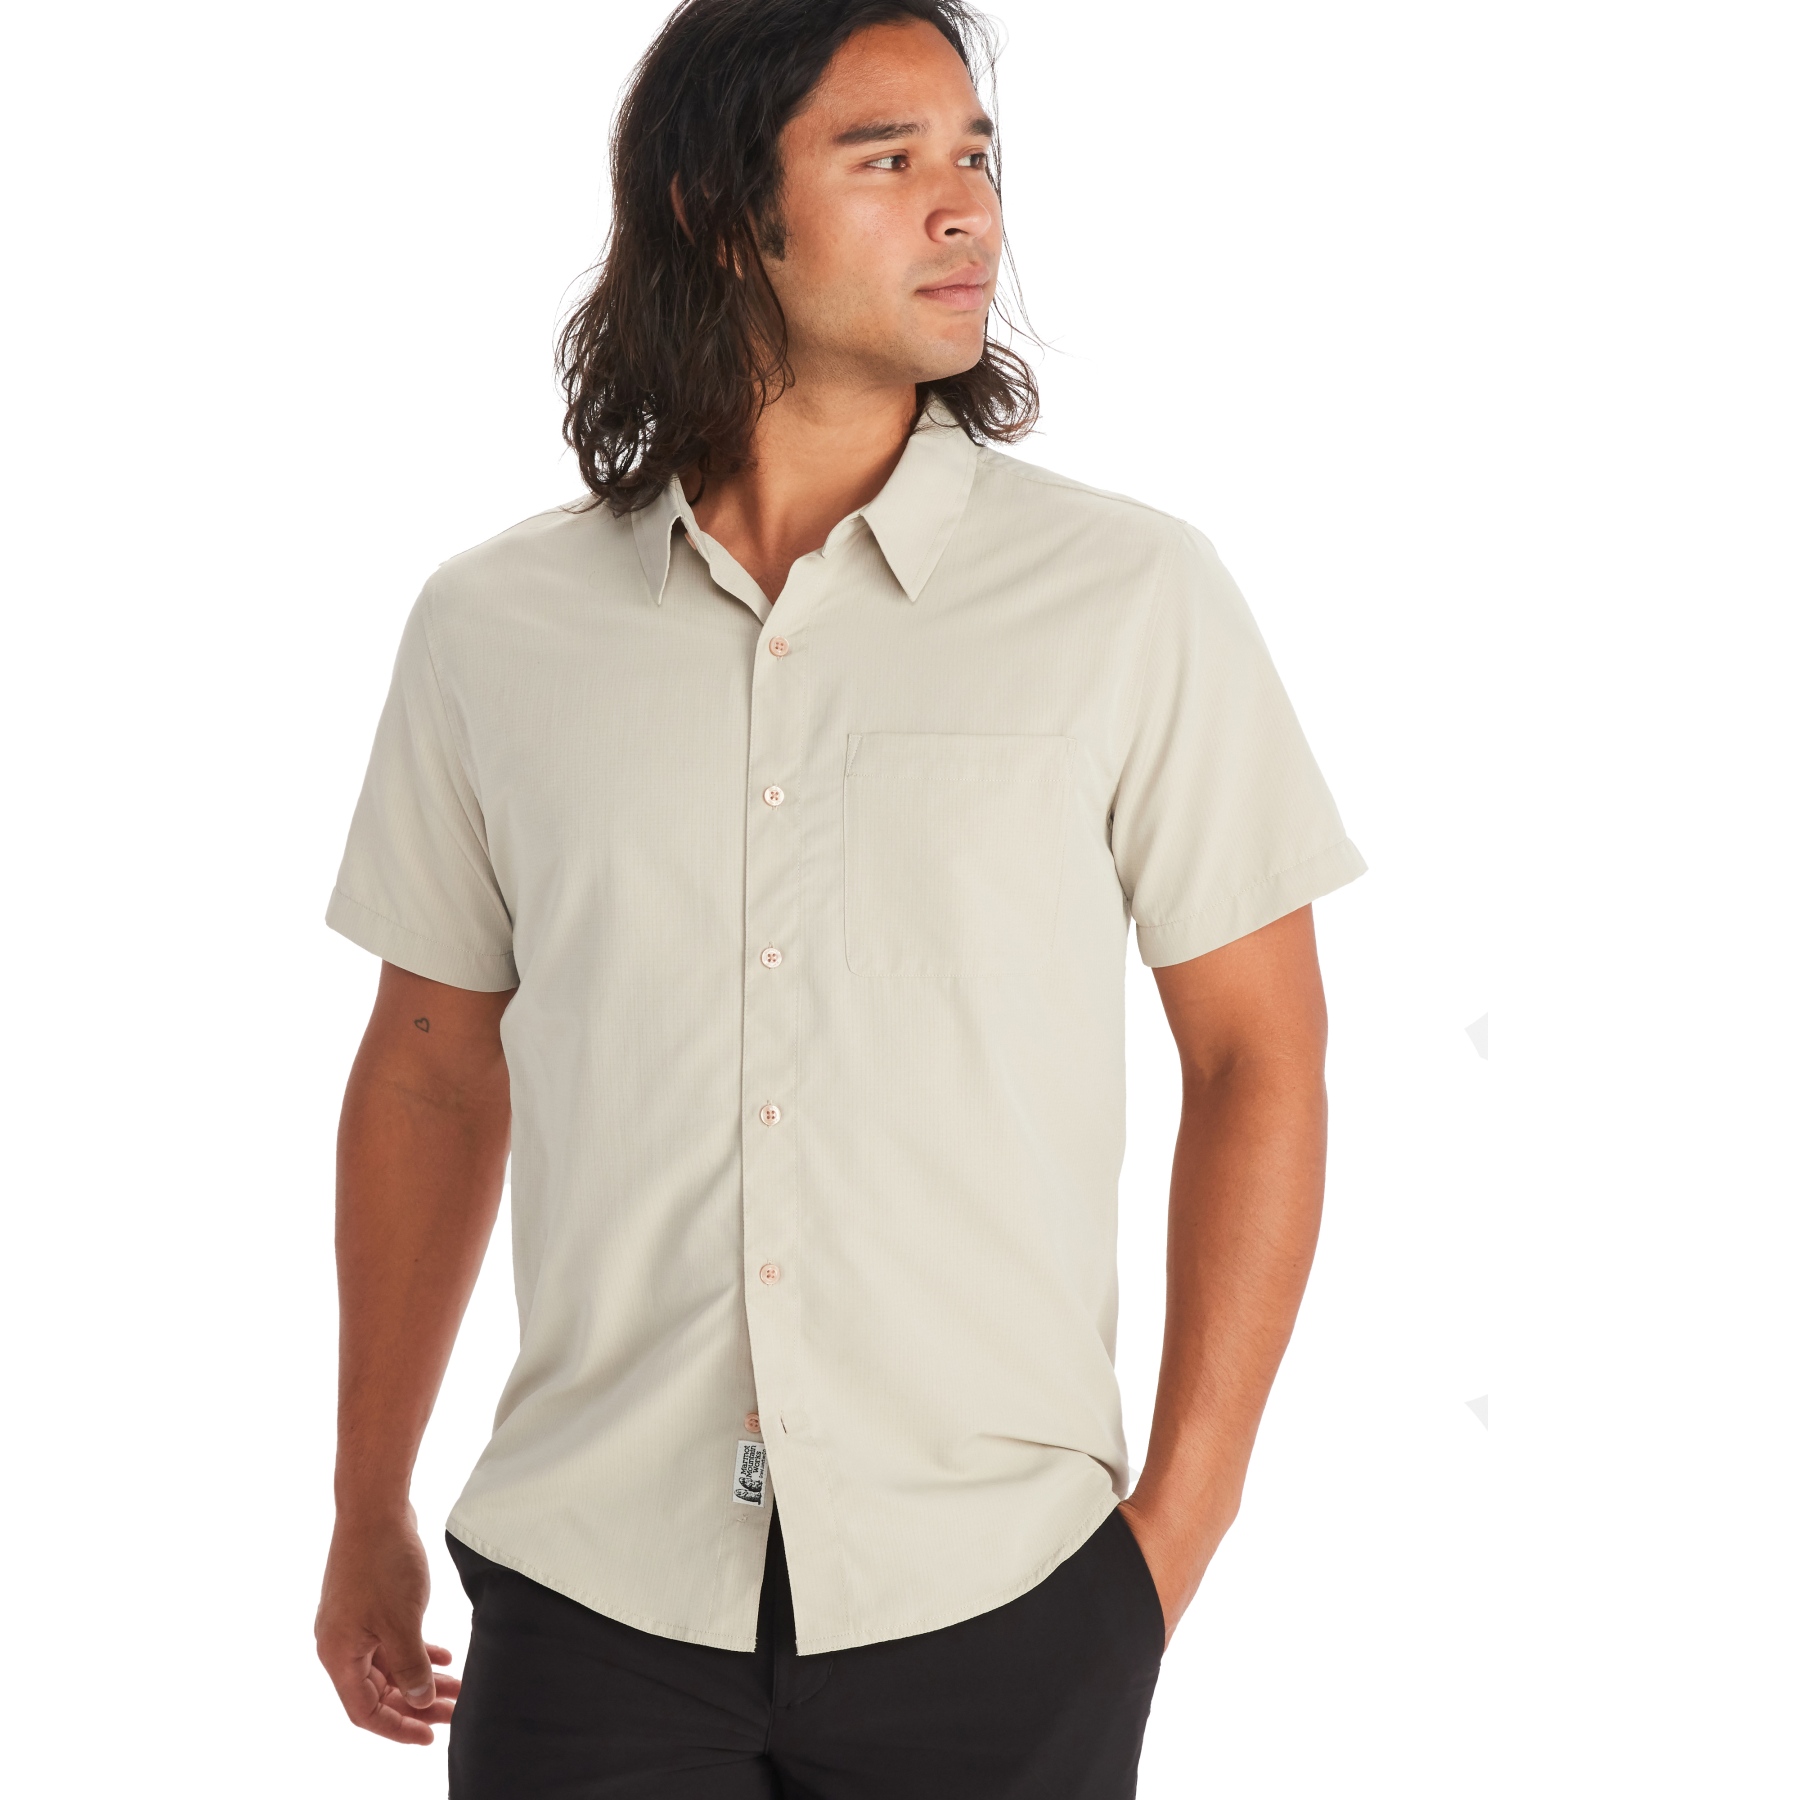 Productfoto van Marmot Aerobora Overhemd met Korte Mouwen Heren - sandbar